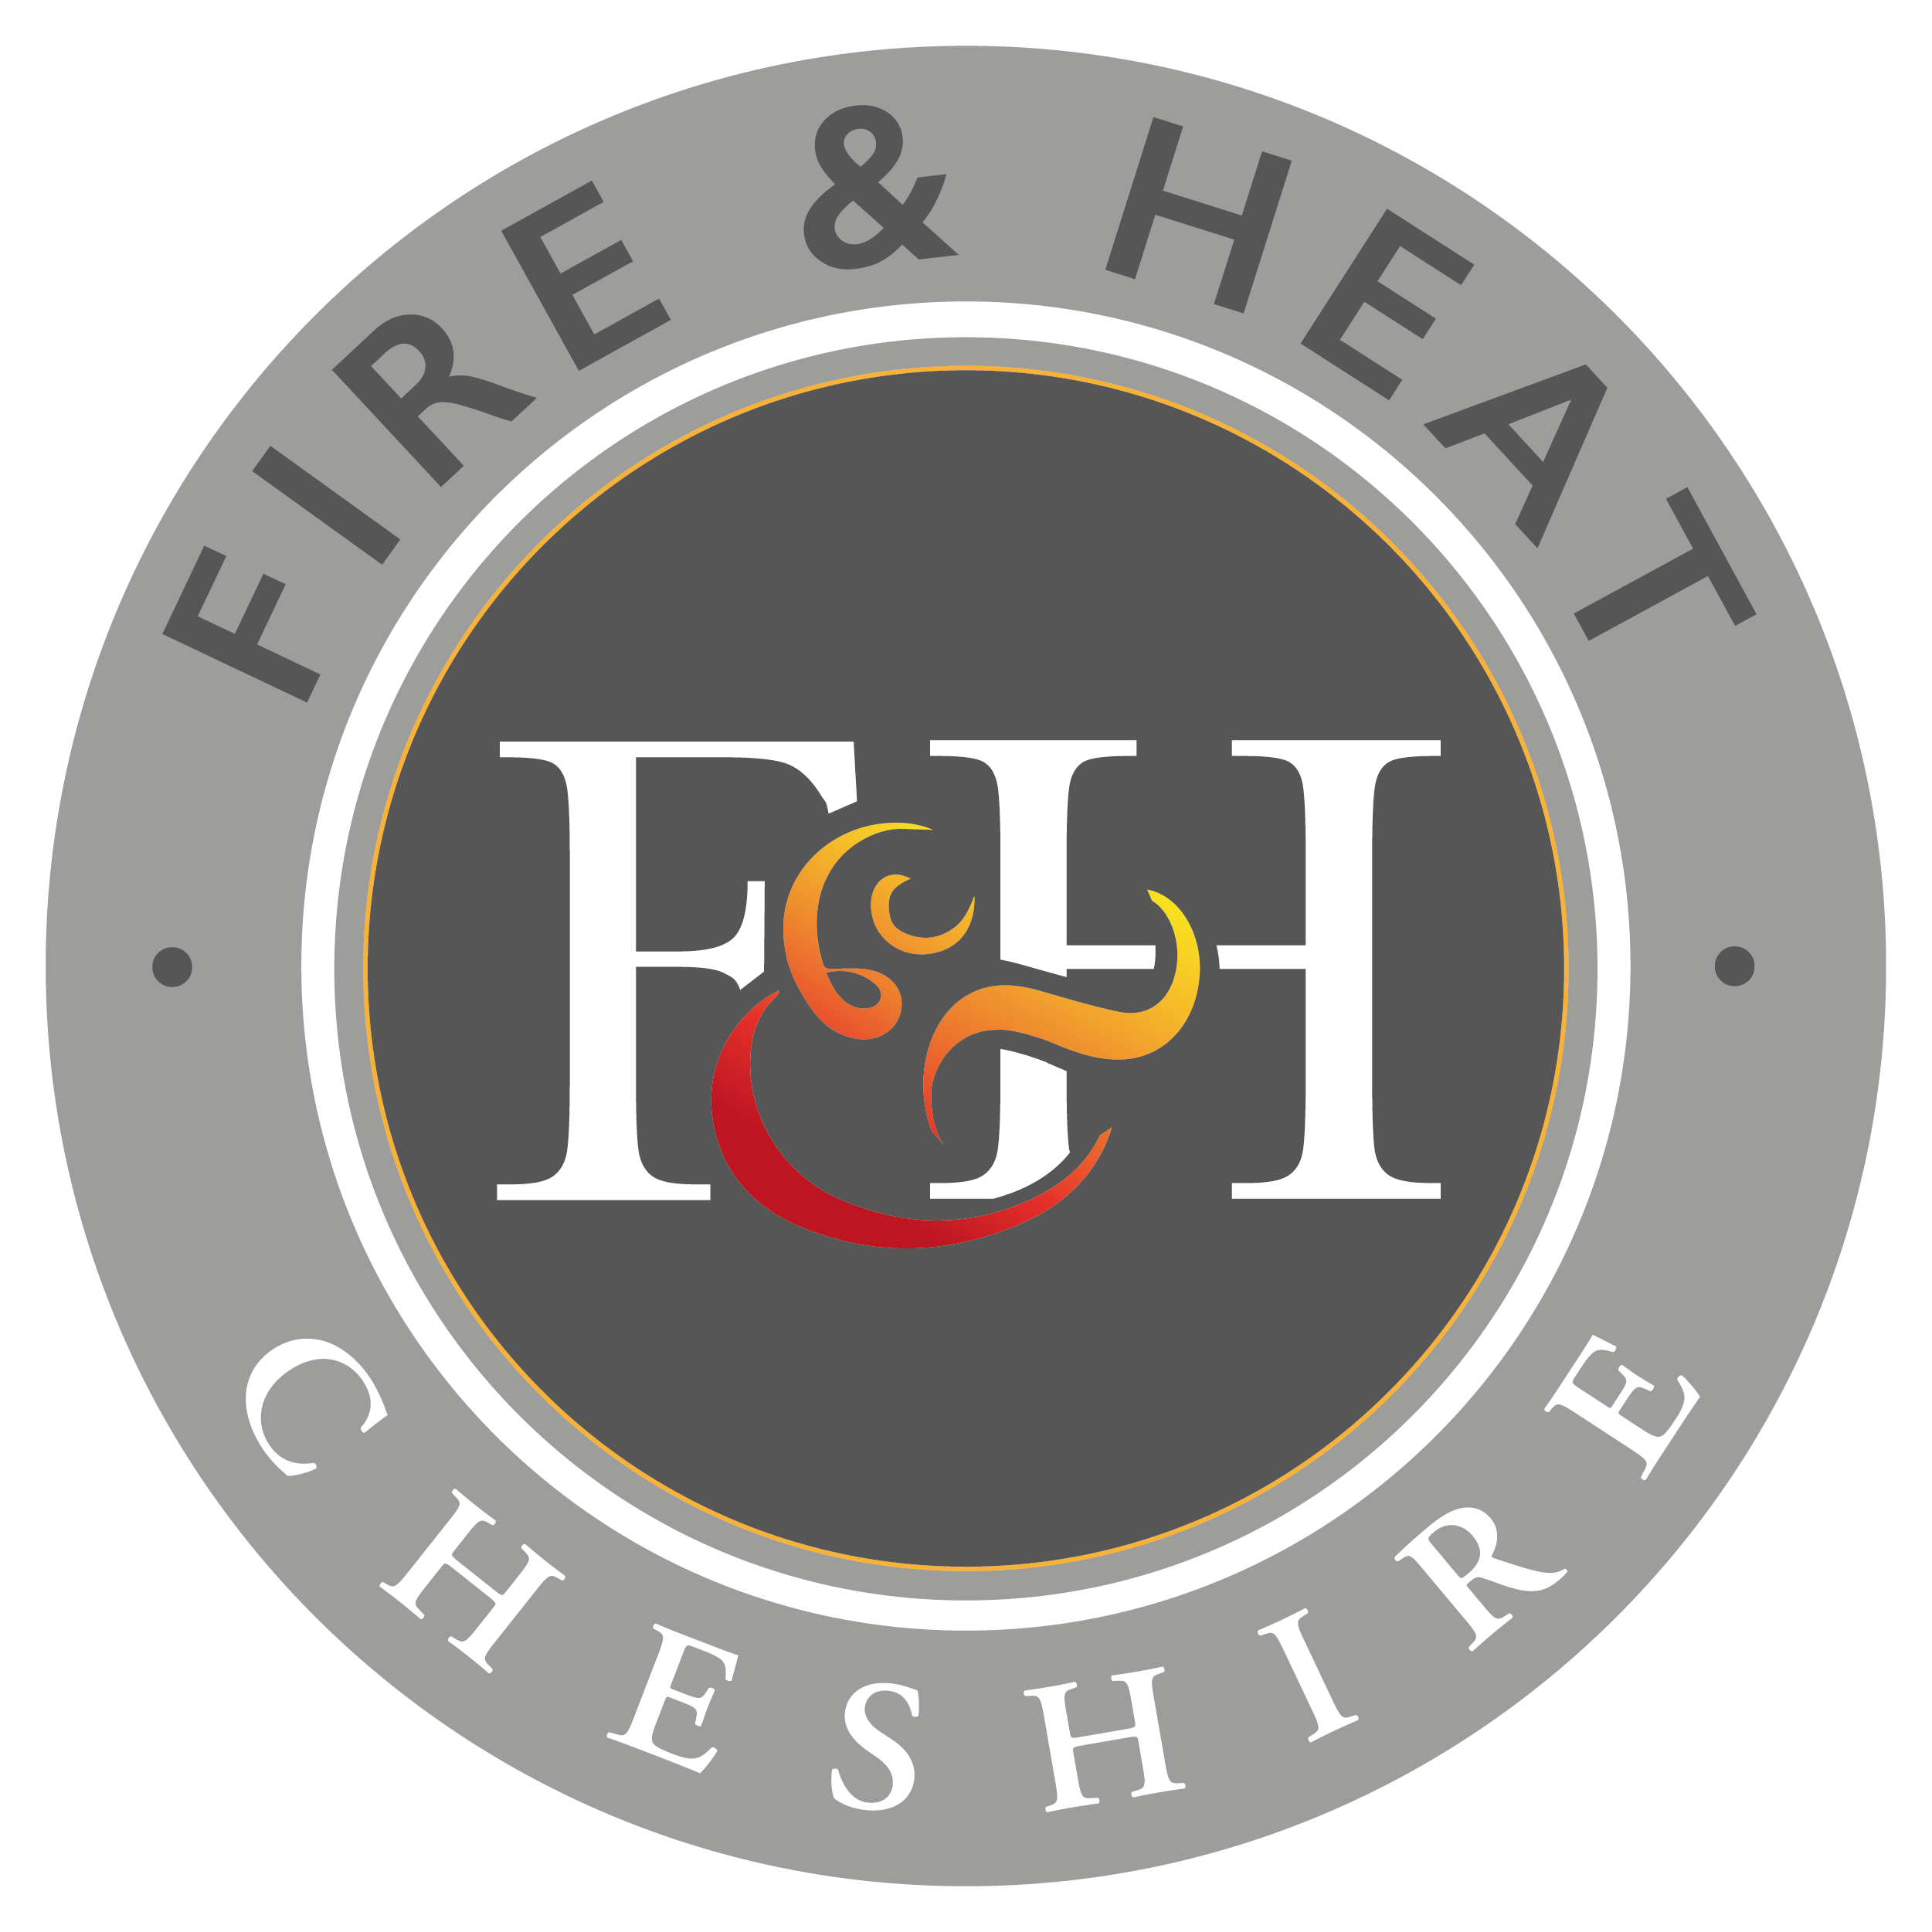 Fire & Heat Cheshire